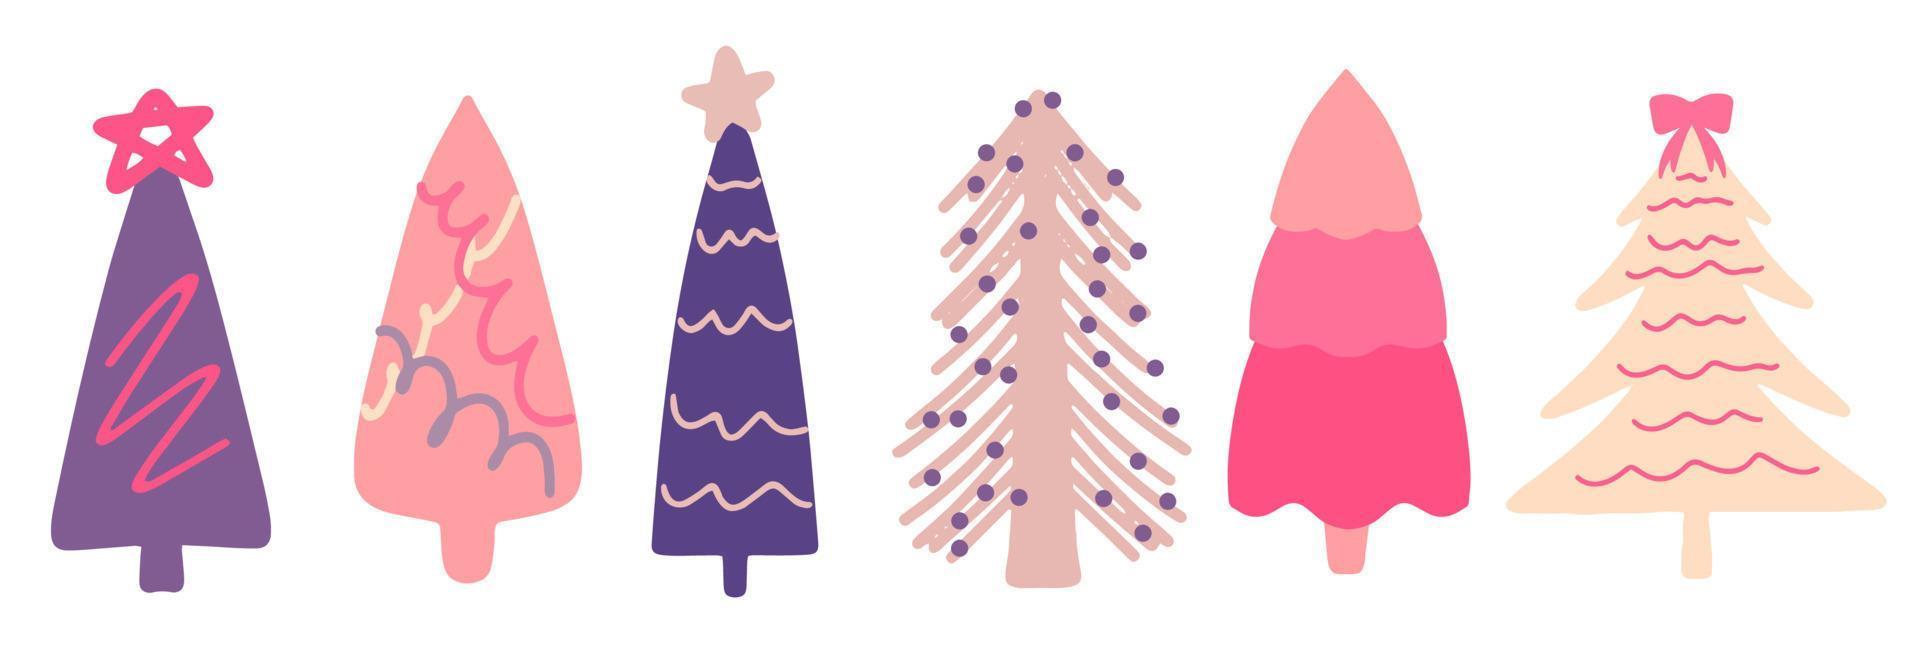 samling av julgranar och granar, modern platt design. en uppsättning ovanliga färgade julgranar. rosa, lila, beige. för tryckta produkter - broschyrer, affischer, visitkort eller för webben. vektor